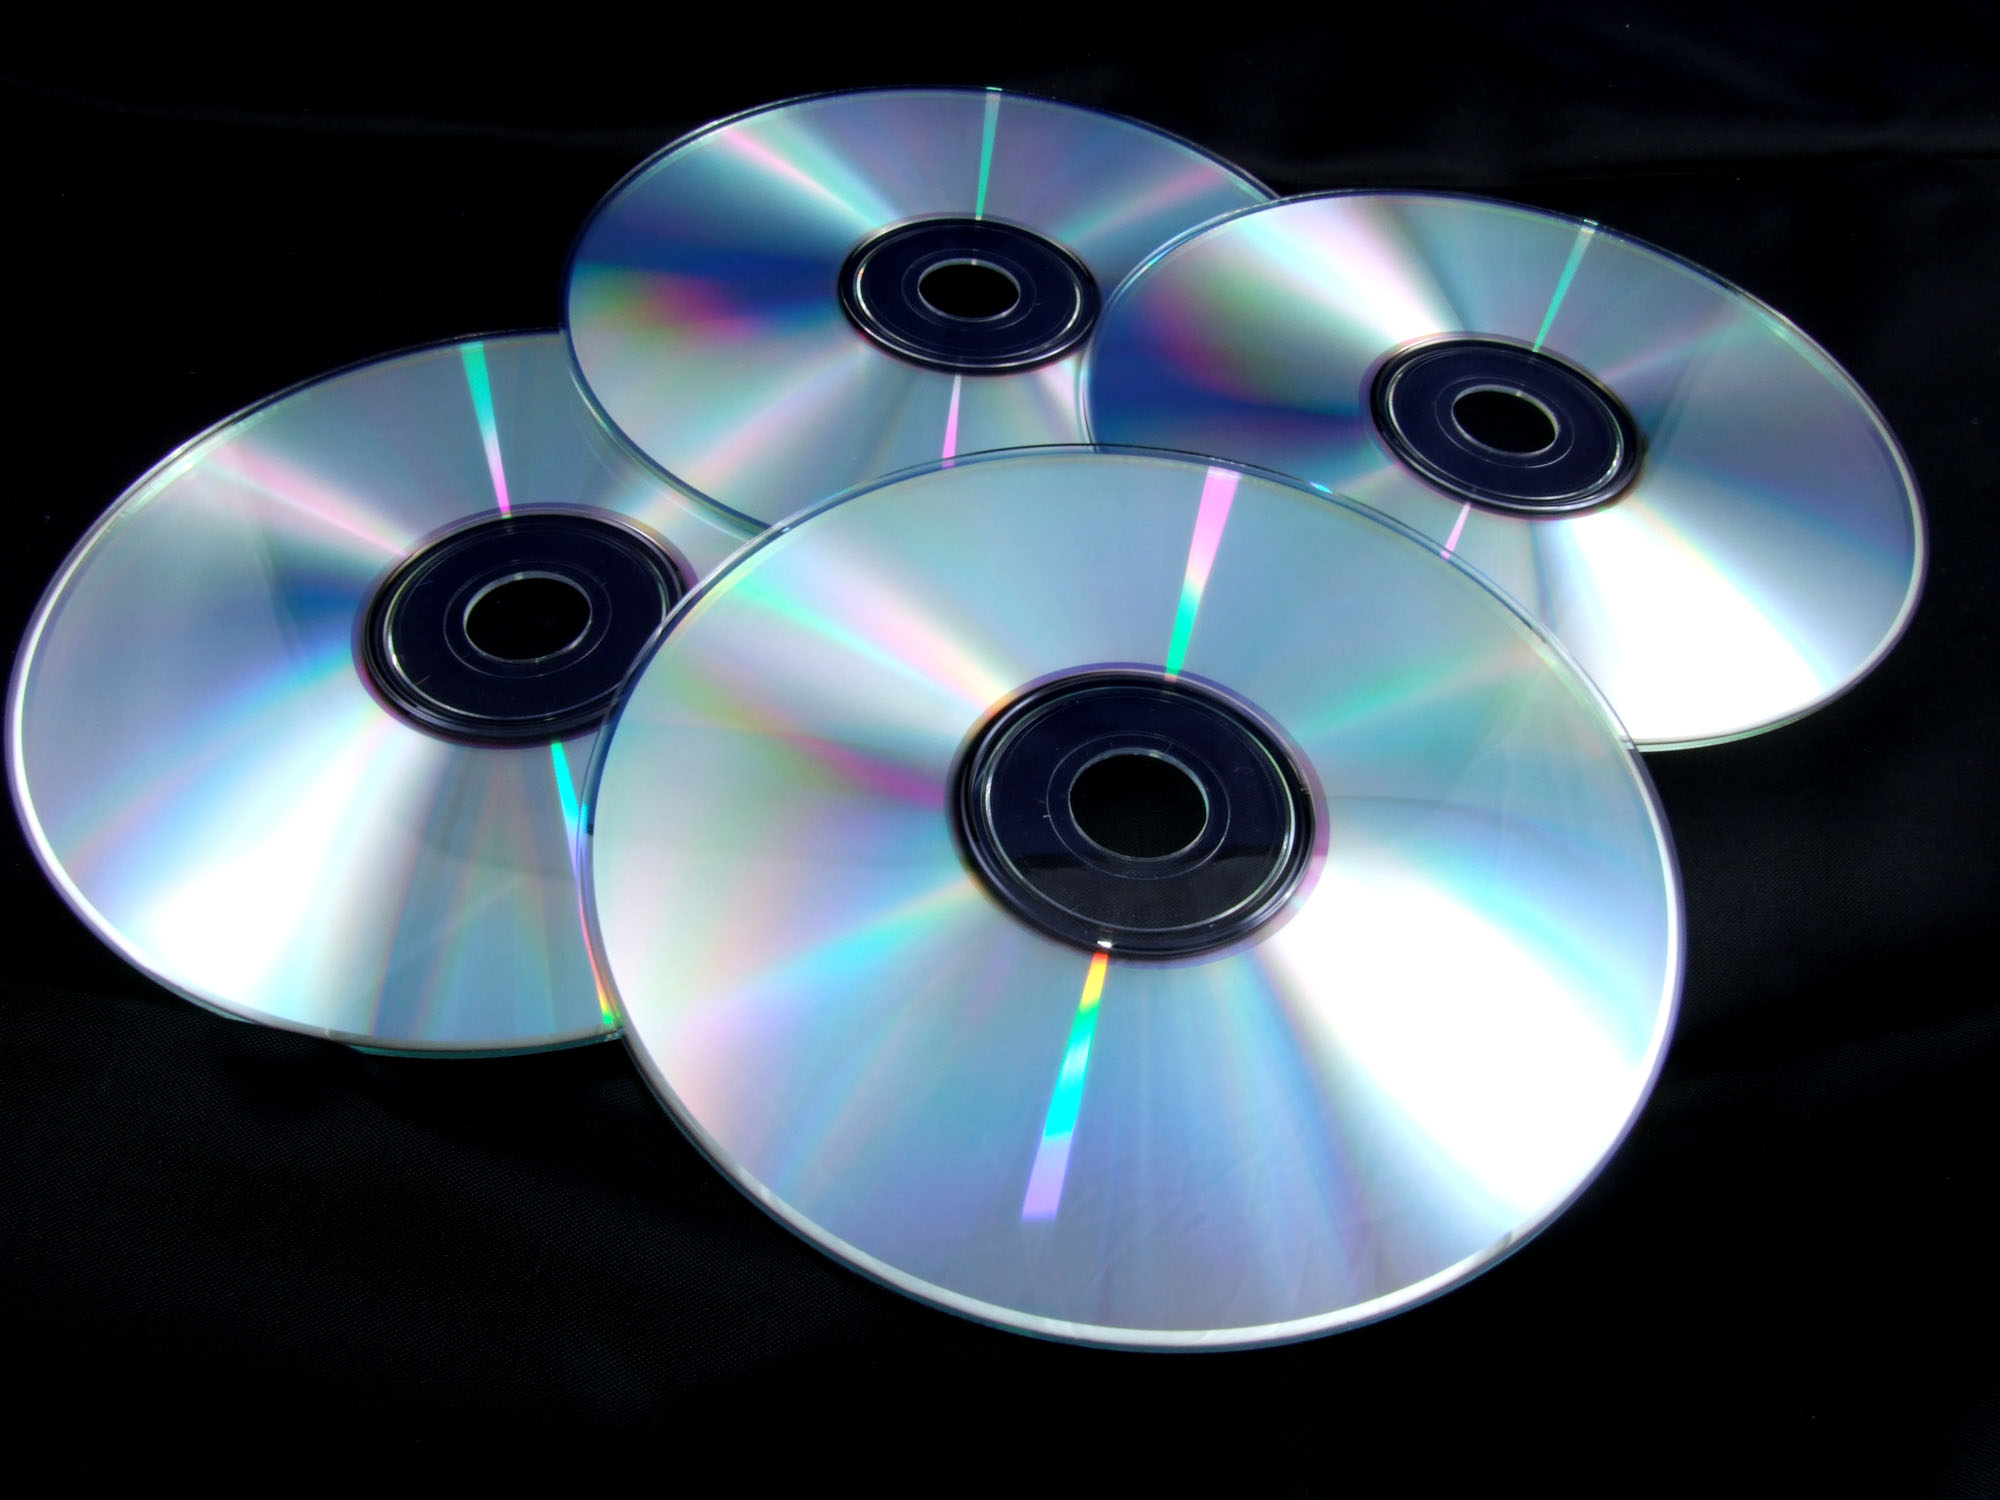 Музыка cd качества. CD - Compact Disk (компакт диск). Лазерный компакт-диск (CD, CD-ROM).. DVD-диски (DVD – Digital versatile Disk, цифровой универсальный диск),. Оптические лазерные диски.